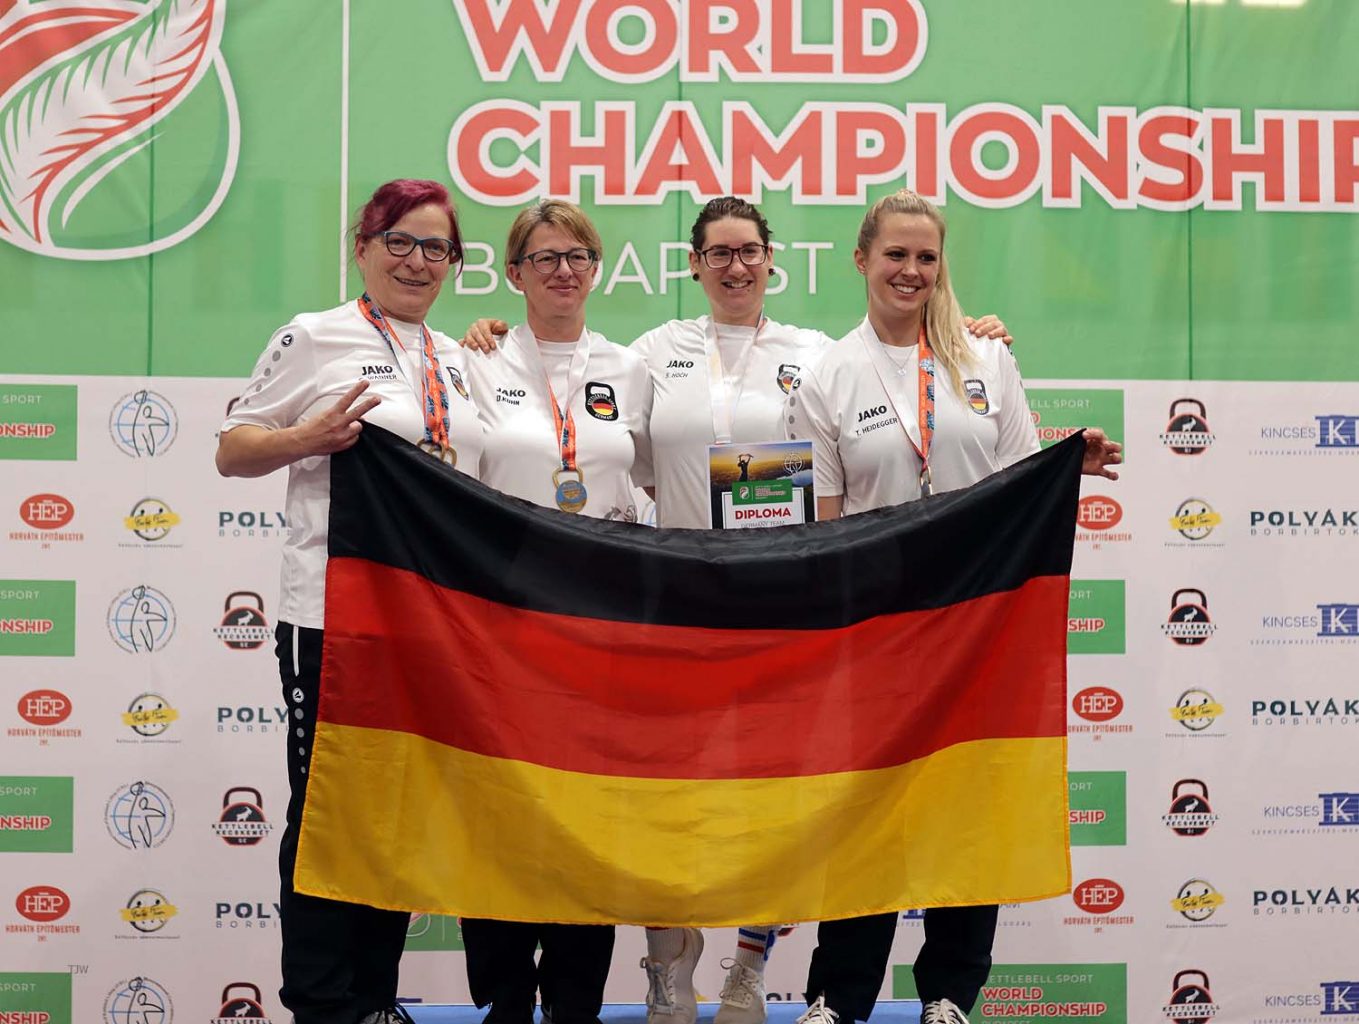 Das deutsche Frauen Team mit Gold
Christine Wanner, Daniela Kuhn, Silvia Hoch, Tina Heidegger